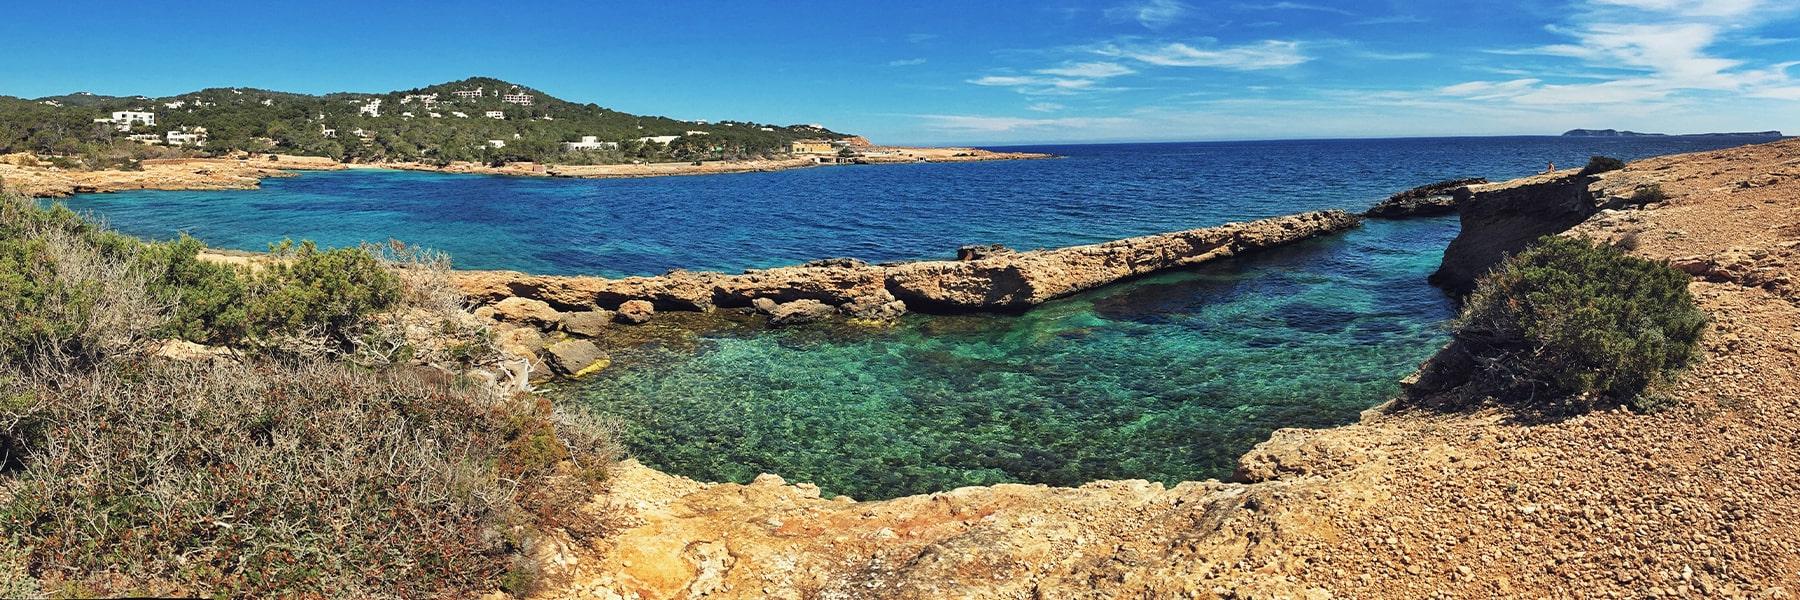 留学生克劳迪娅·冈萨雷斯拍摄的地中海蔚蓝海滩照片.